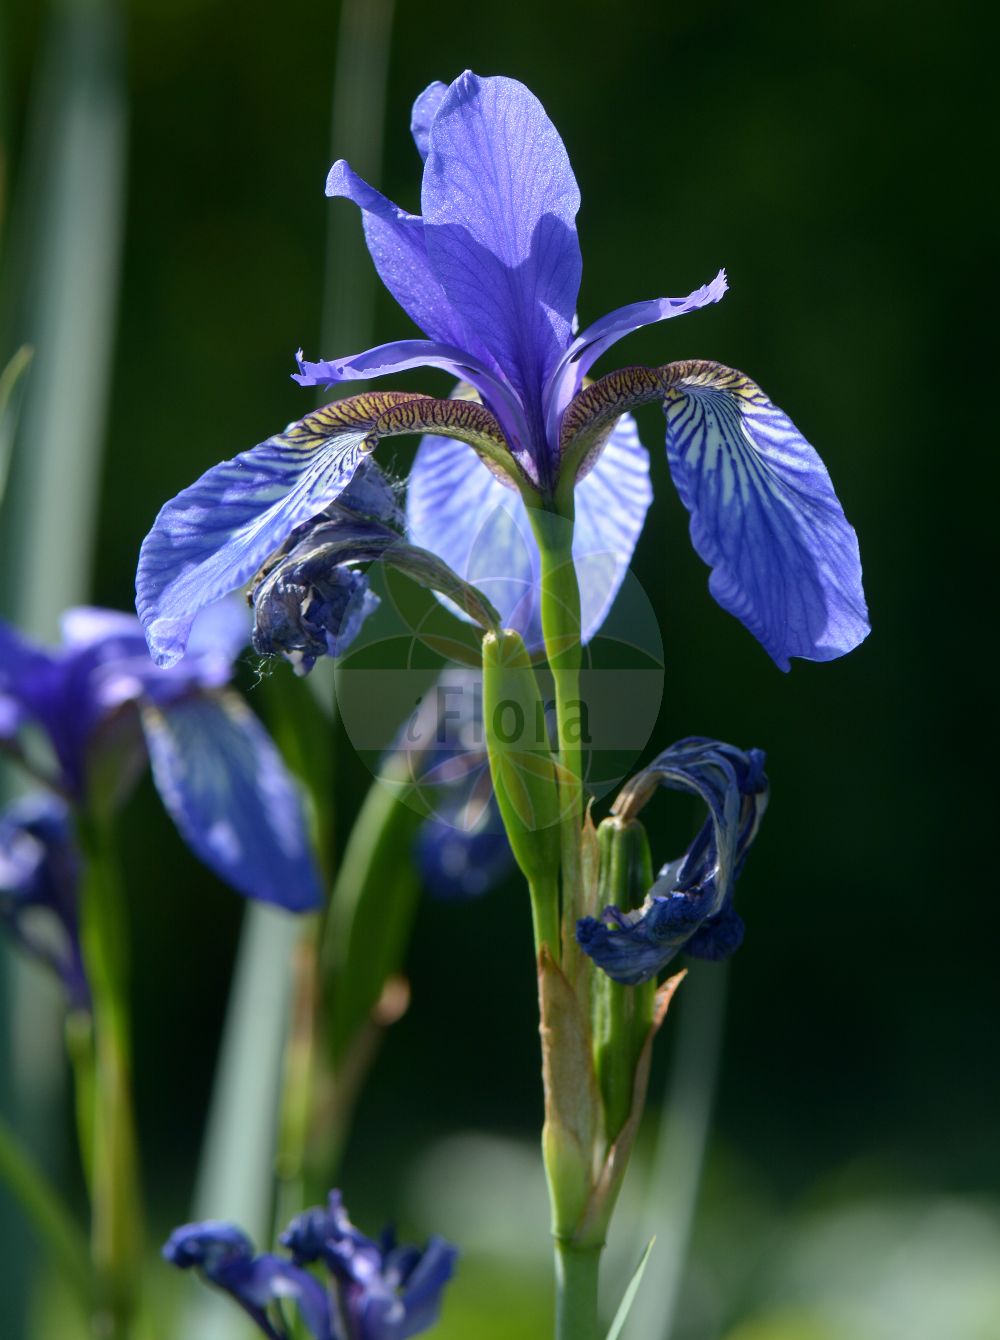 Foto von Iris spuria (Salzwiesen-Schwertlilie - Blue Iris). Das Foto wurde in Stockholm, Schweden aufgenommen. ---- Photo of Iris spuria (Salzwiesen-Schwertlilie - Blue Iris). The picture was taken in Stockholm, Sweden.(Iris spuria,Salzwiesen-Schwertlilie,Blue Iris,Chamaeiris spuria,Iris spuria,Limniris spuria,Xiphion spurium,Xyridion spurium,Salzwiesen-Schwertlilie,Sumpfwiesen-Schwertlilie,Wiesen-Schwertlilie,Blue Iris,Seashore Iris,Iris,Schwertlilie,Iris,Iridaceae,Schwertliliengewächse,Iris family)